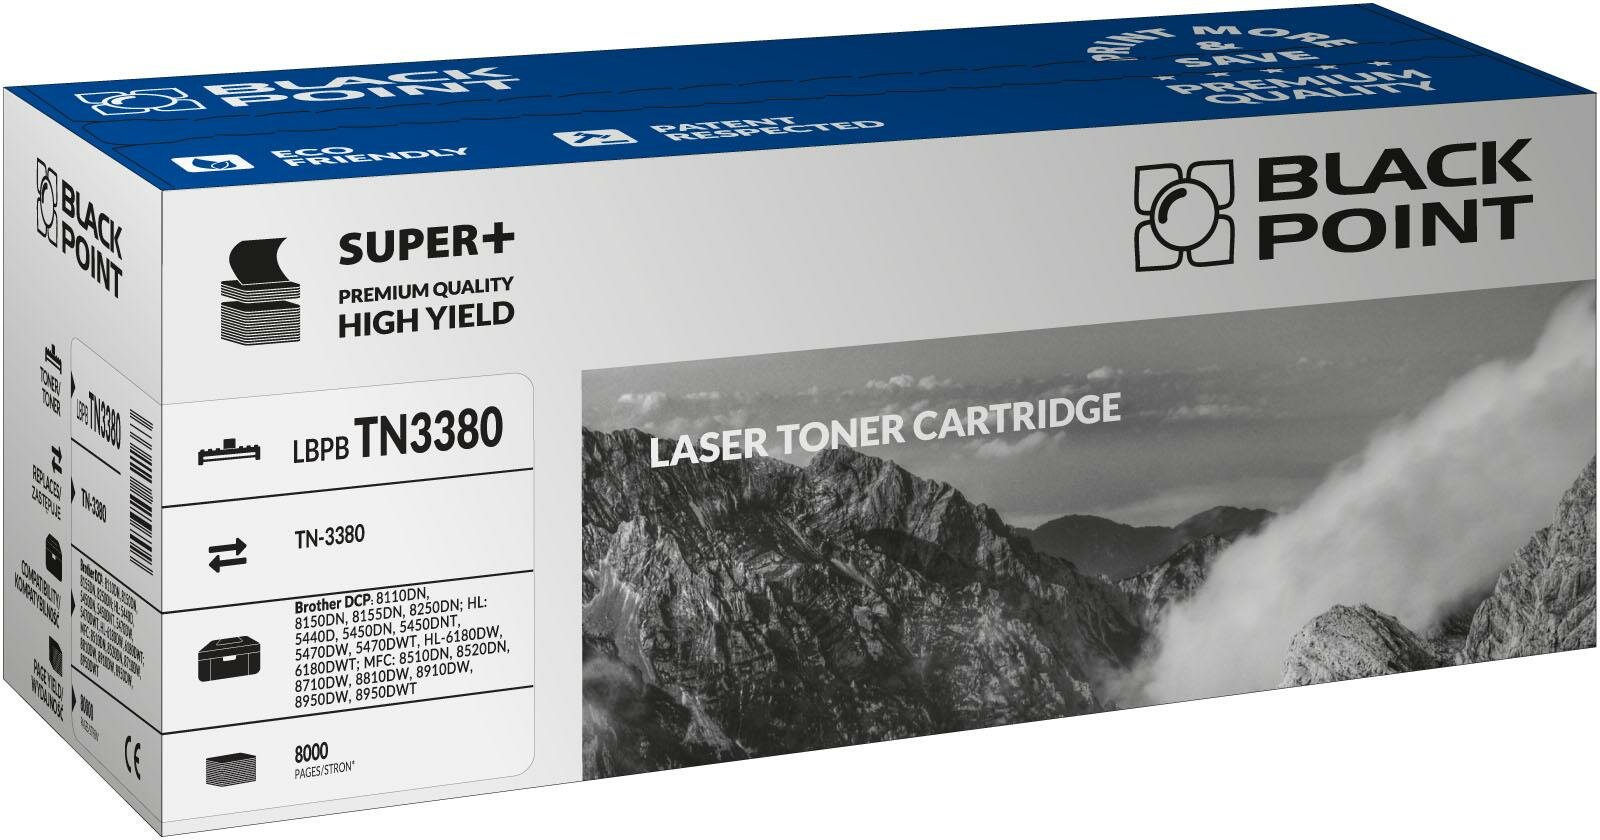 Toner laserowy Black Point Super Plus LBPBTN3380 widokna opakownie przodem